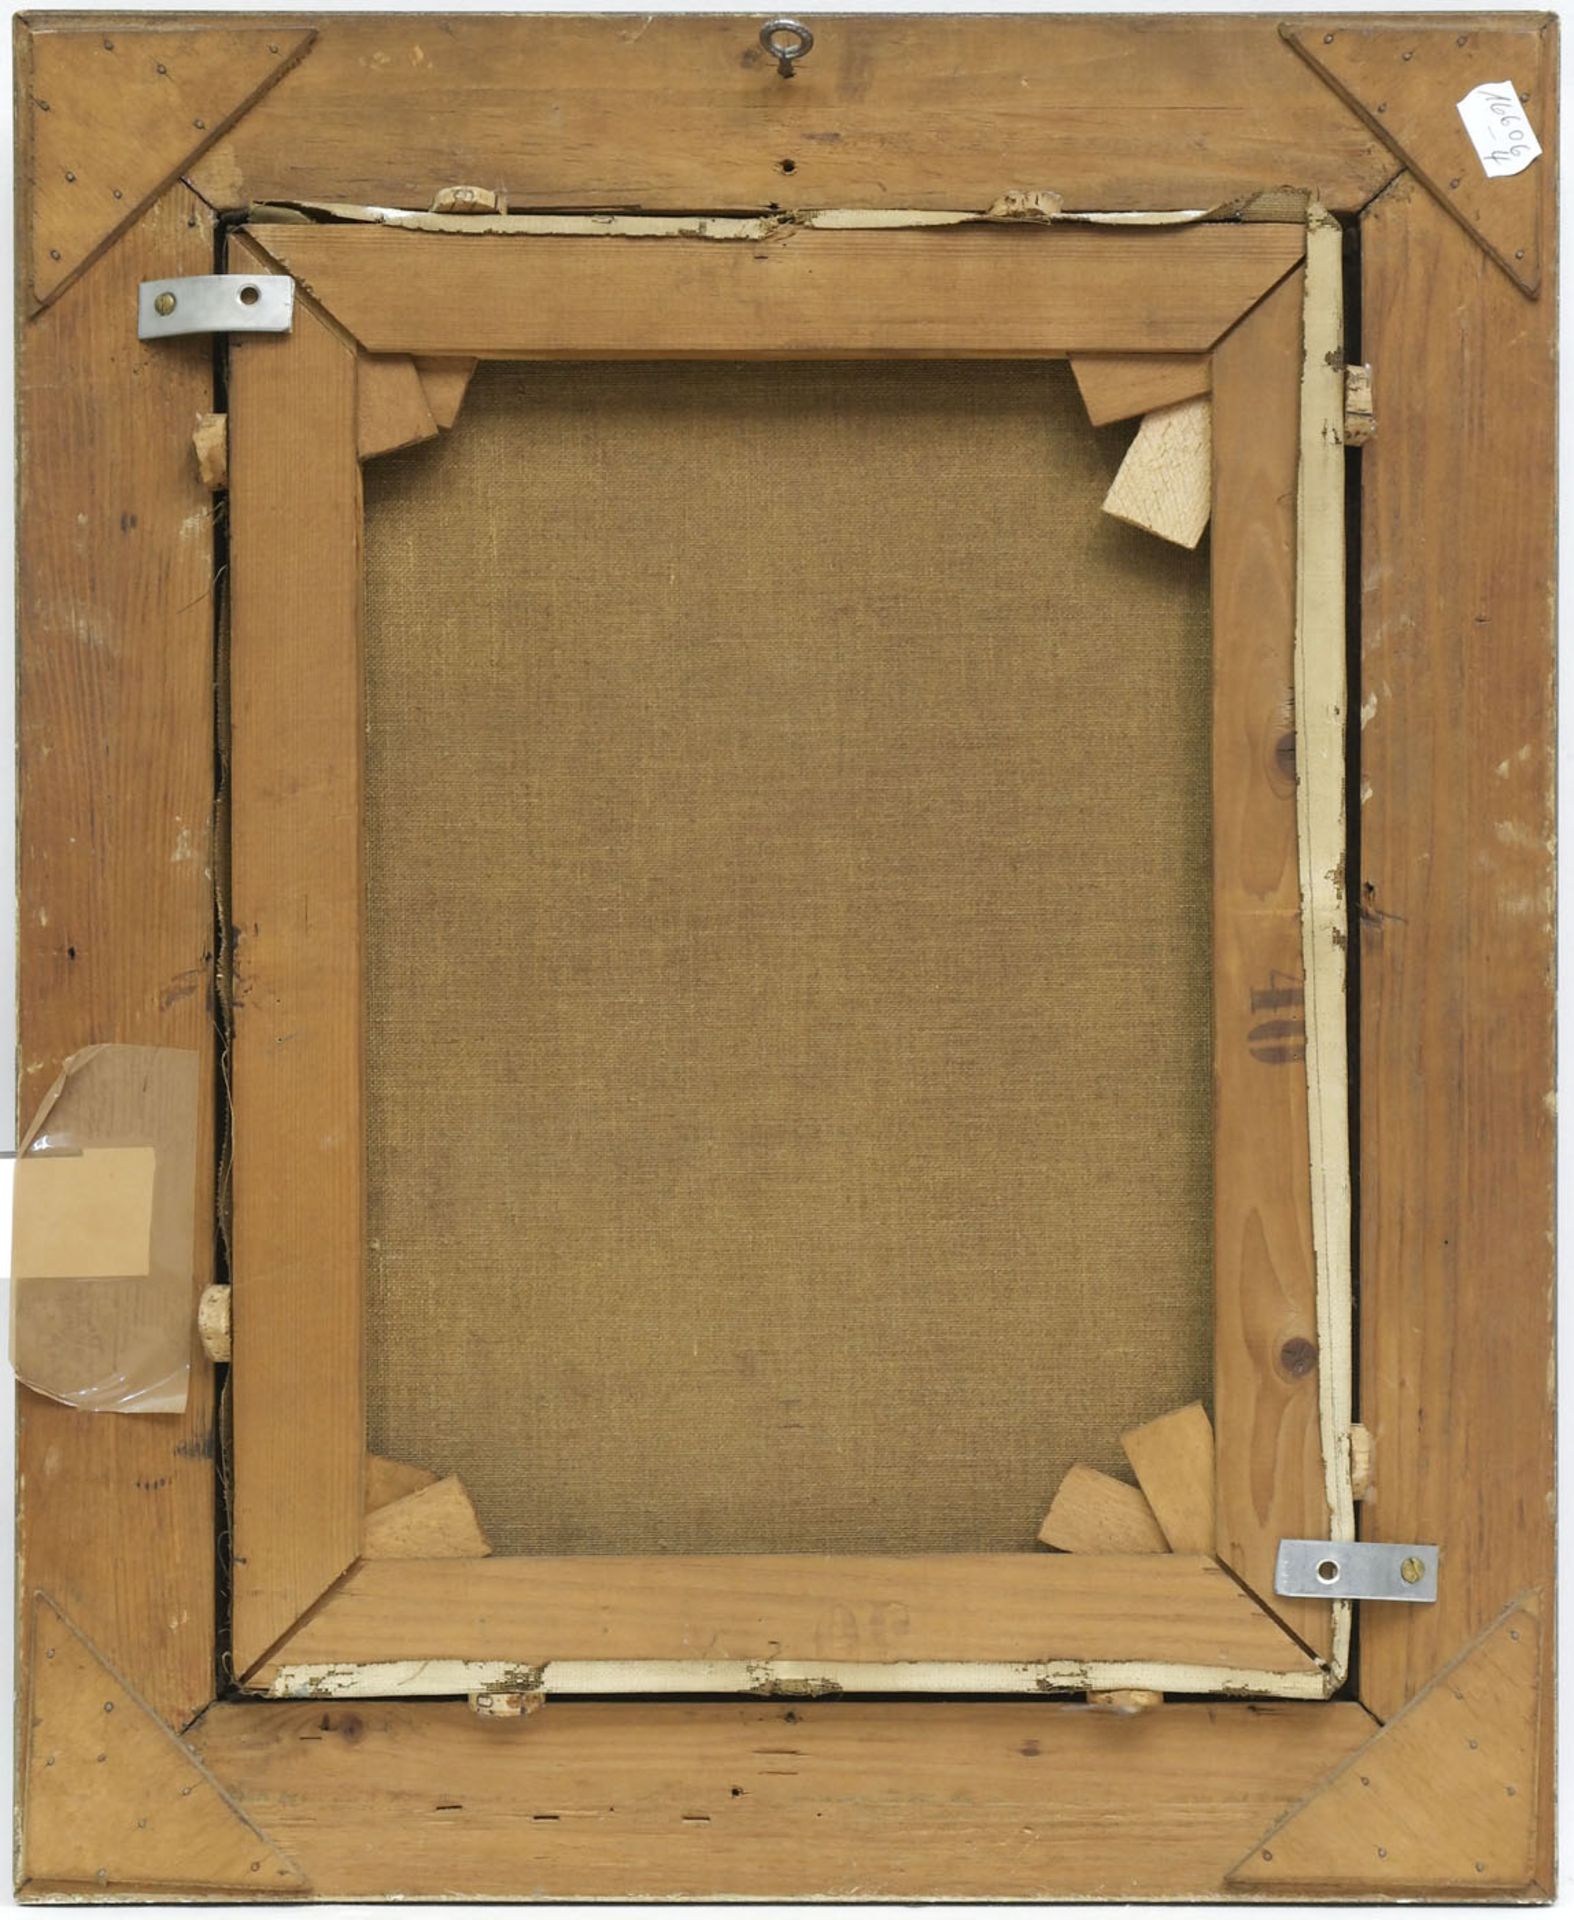 Maler Ende 19. Jh. "Beduine", Öl/Lw., undeutl. sign. u.r., 41x31 cm - Image 3 of 3